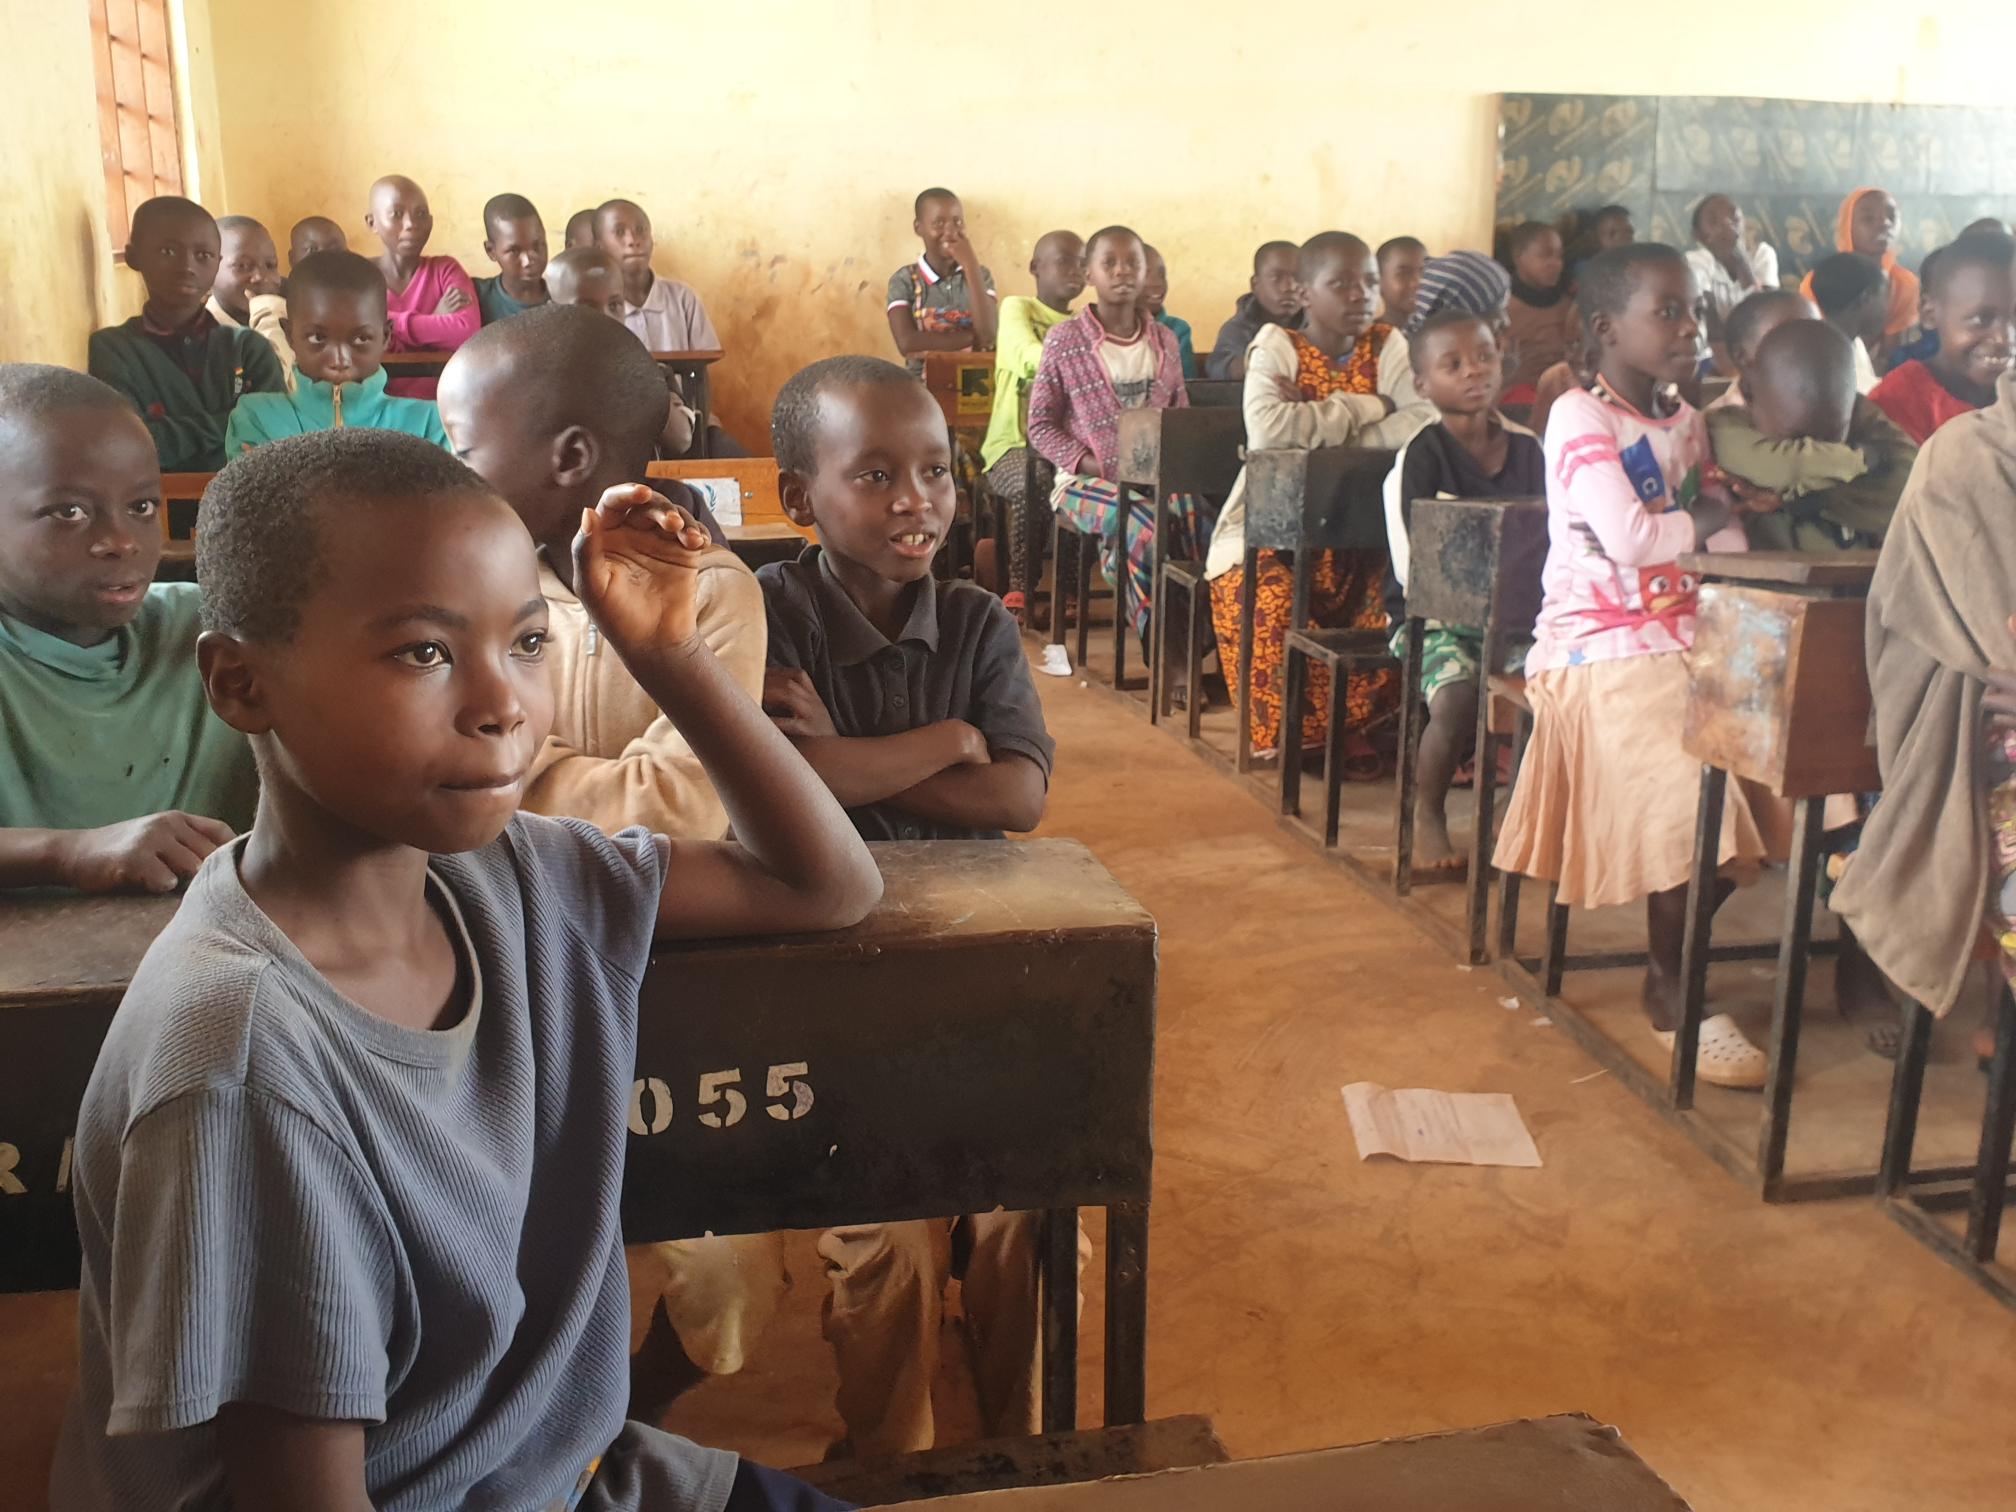 A ProFuturo assina um acordo com o IRC para expandir seu programa de educação digital em contextos de emergência na Tanzânia